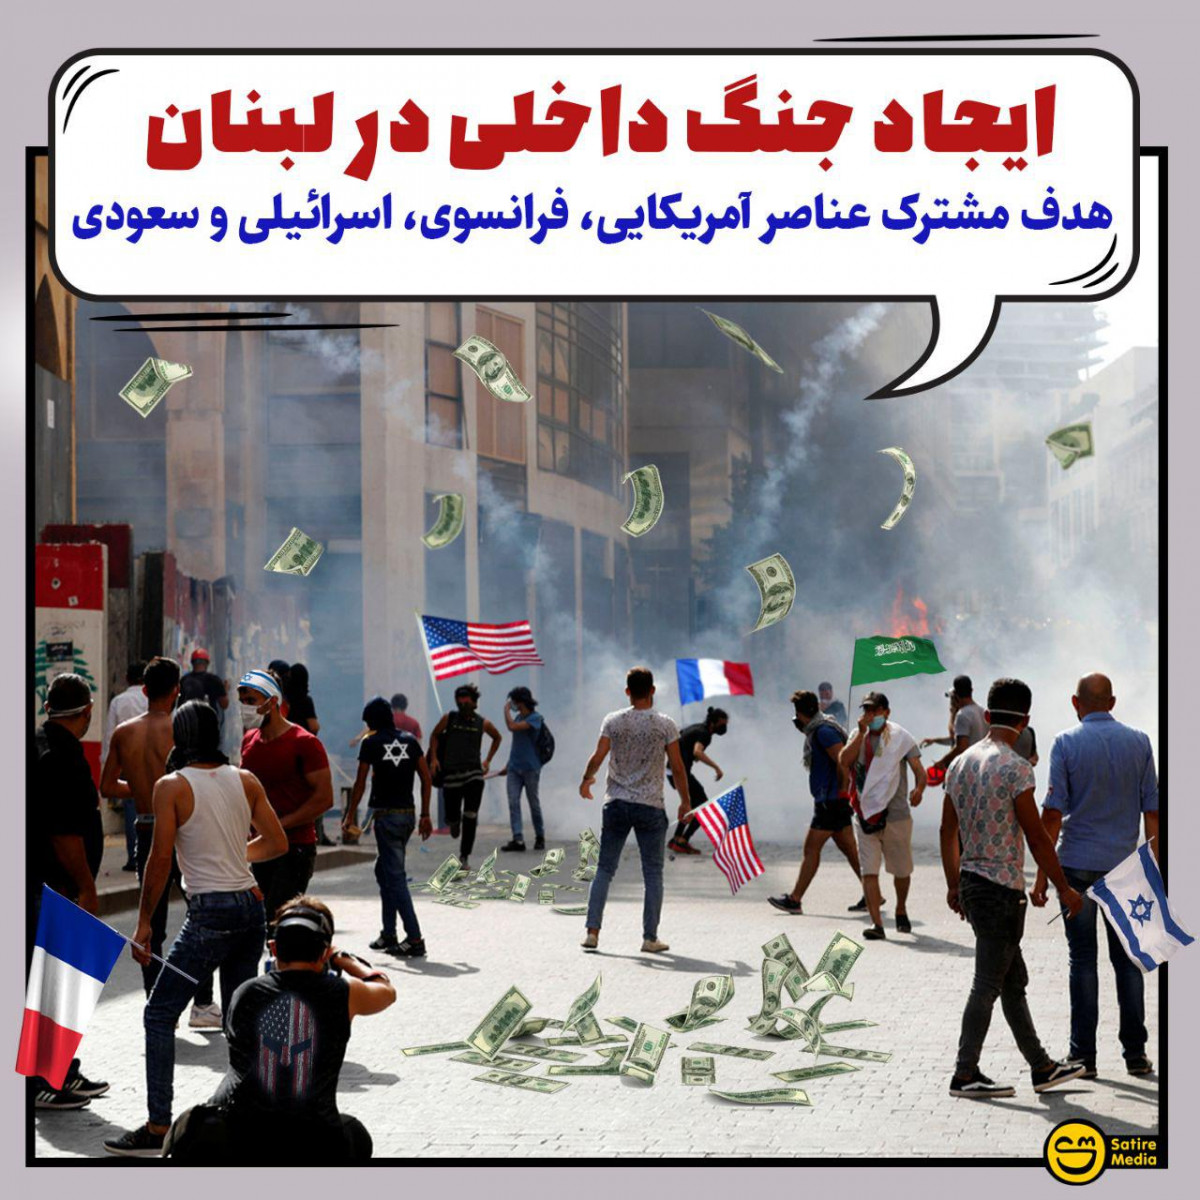 پوستر: ایجاد جنگ داخلی در لبنان، هدف مشترک عناصر آمریکایی، فرانسوی، اسرائیلی و سعودی